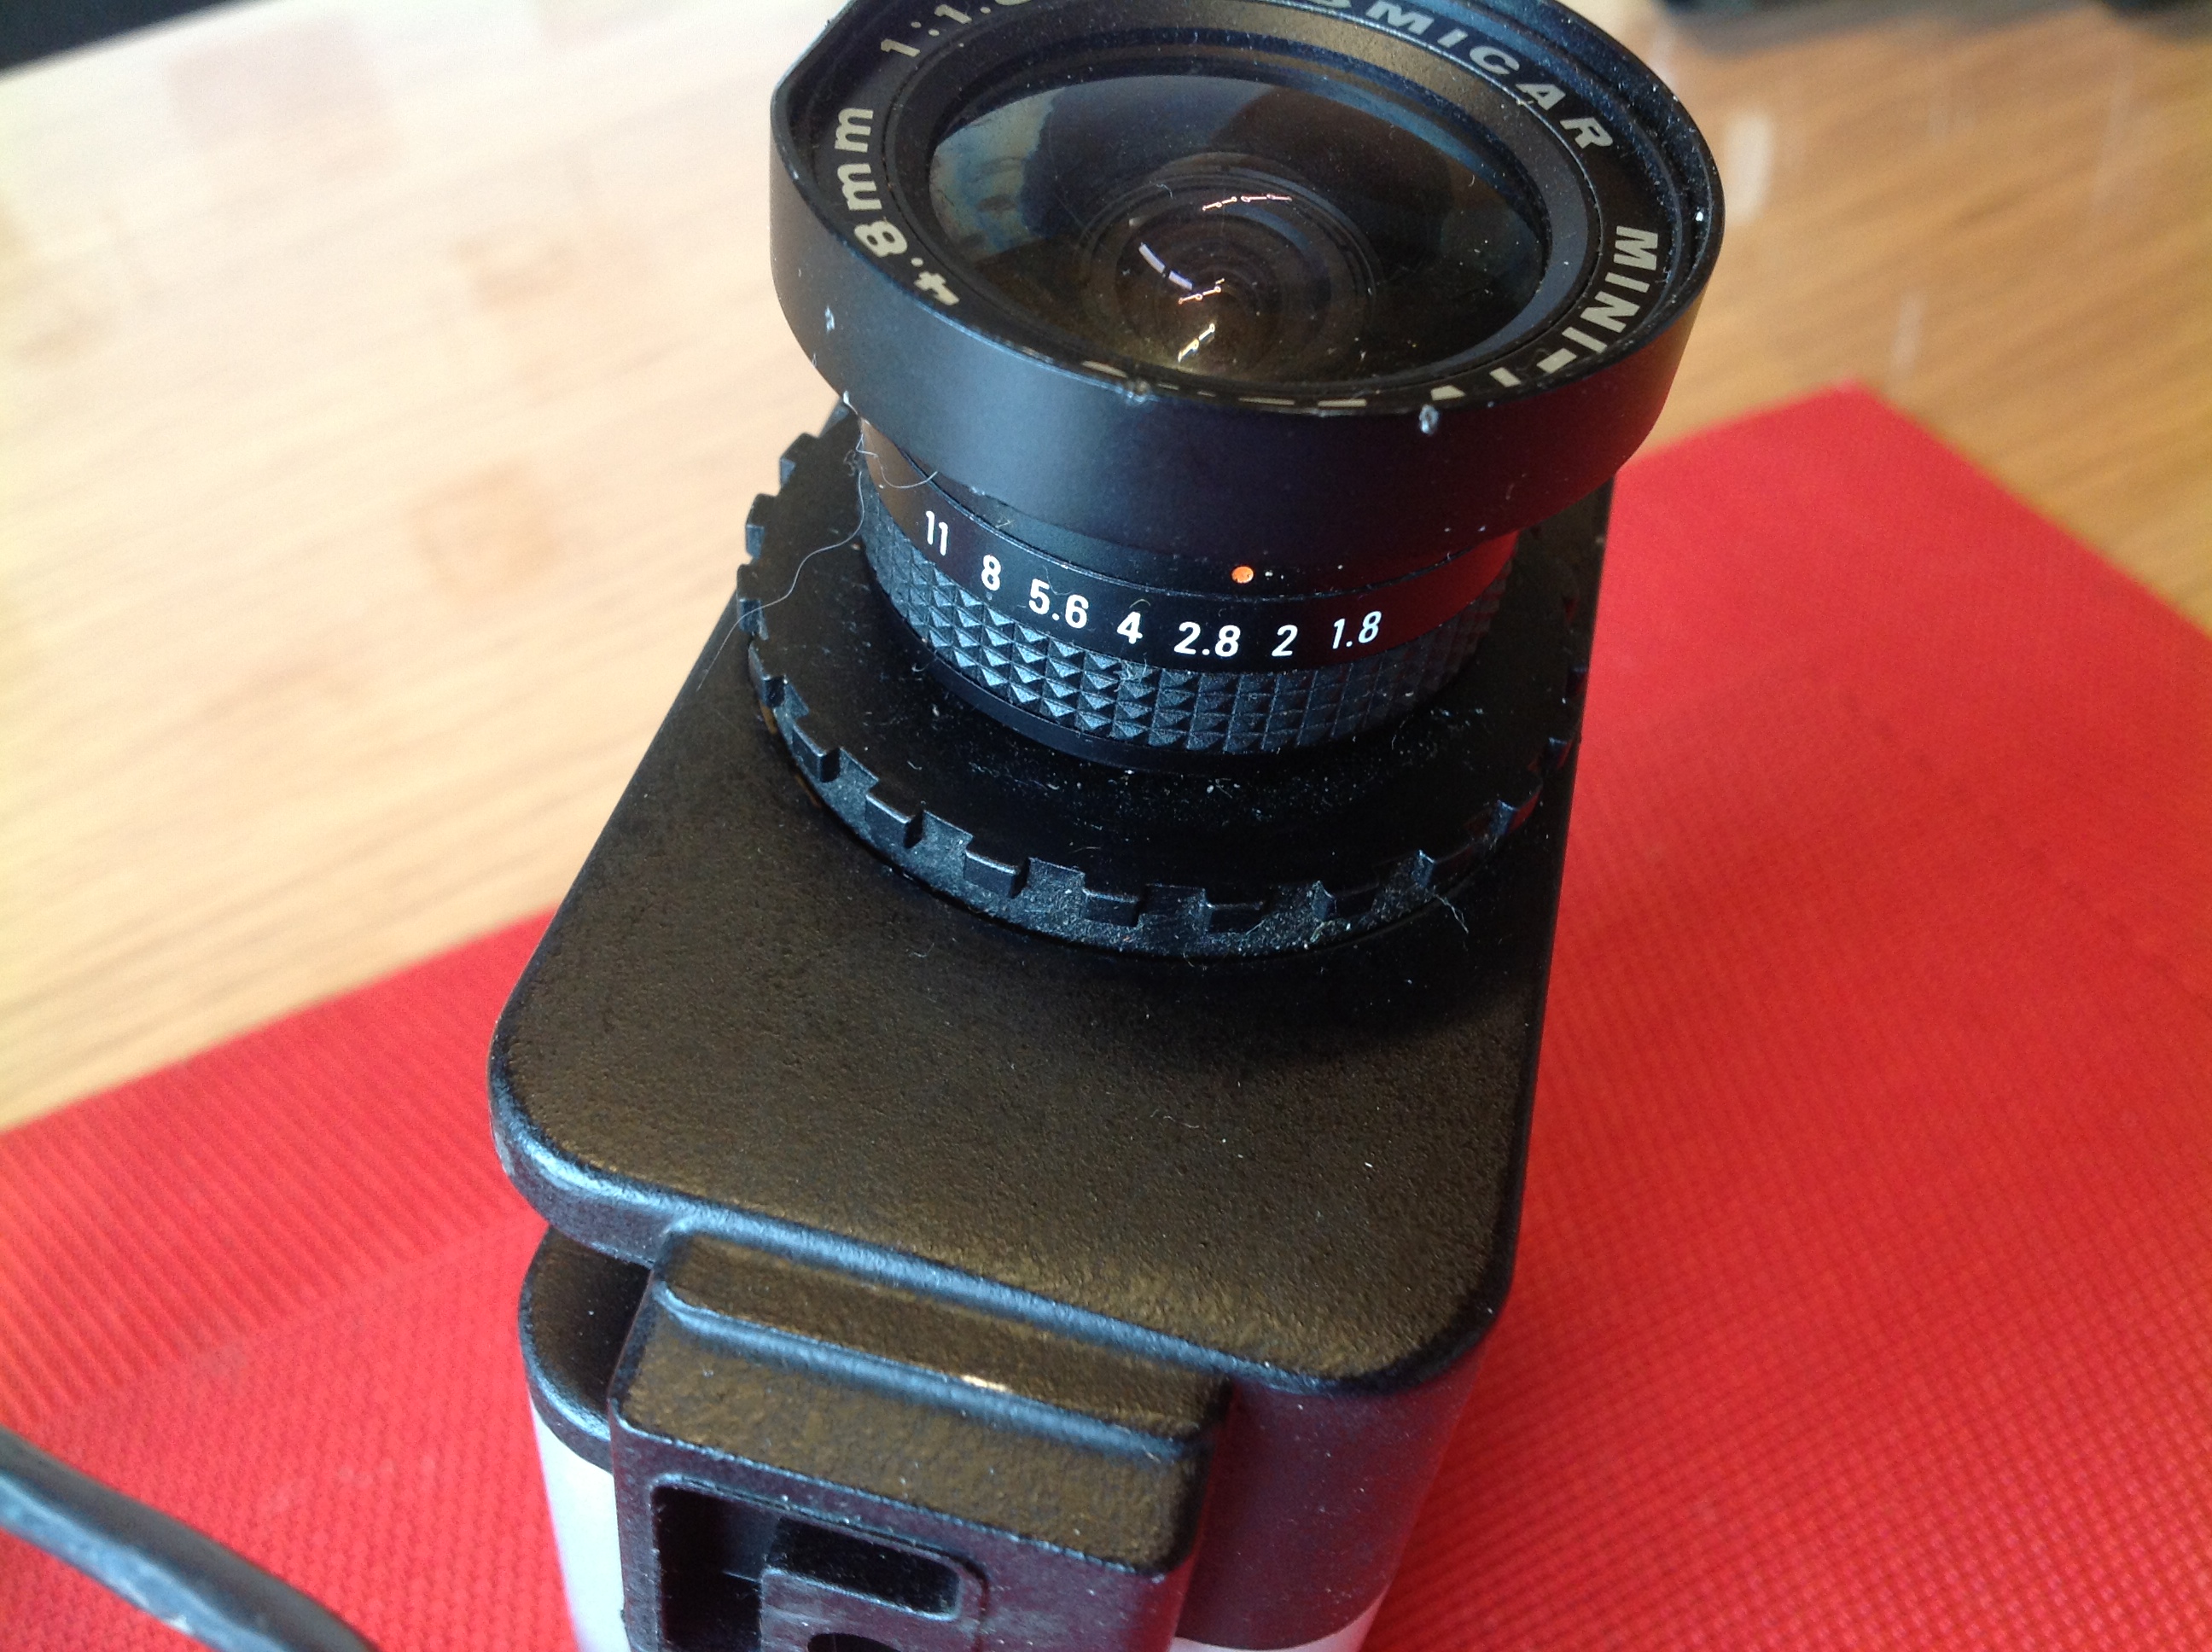 Kamera Philips Cosmicar Mini-TV Lens 1:1,8/4.8 mm